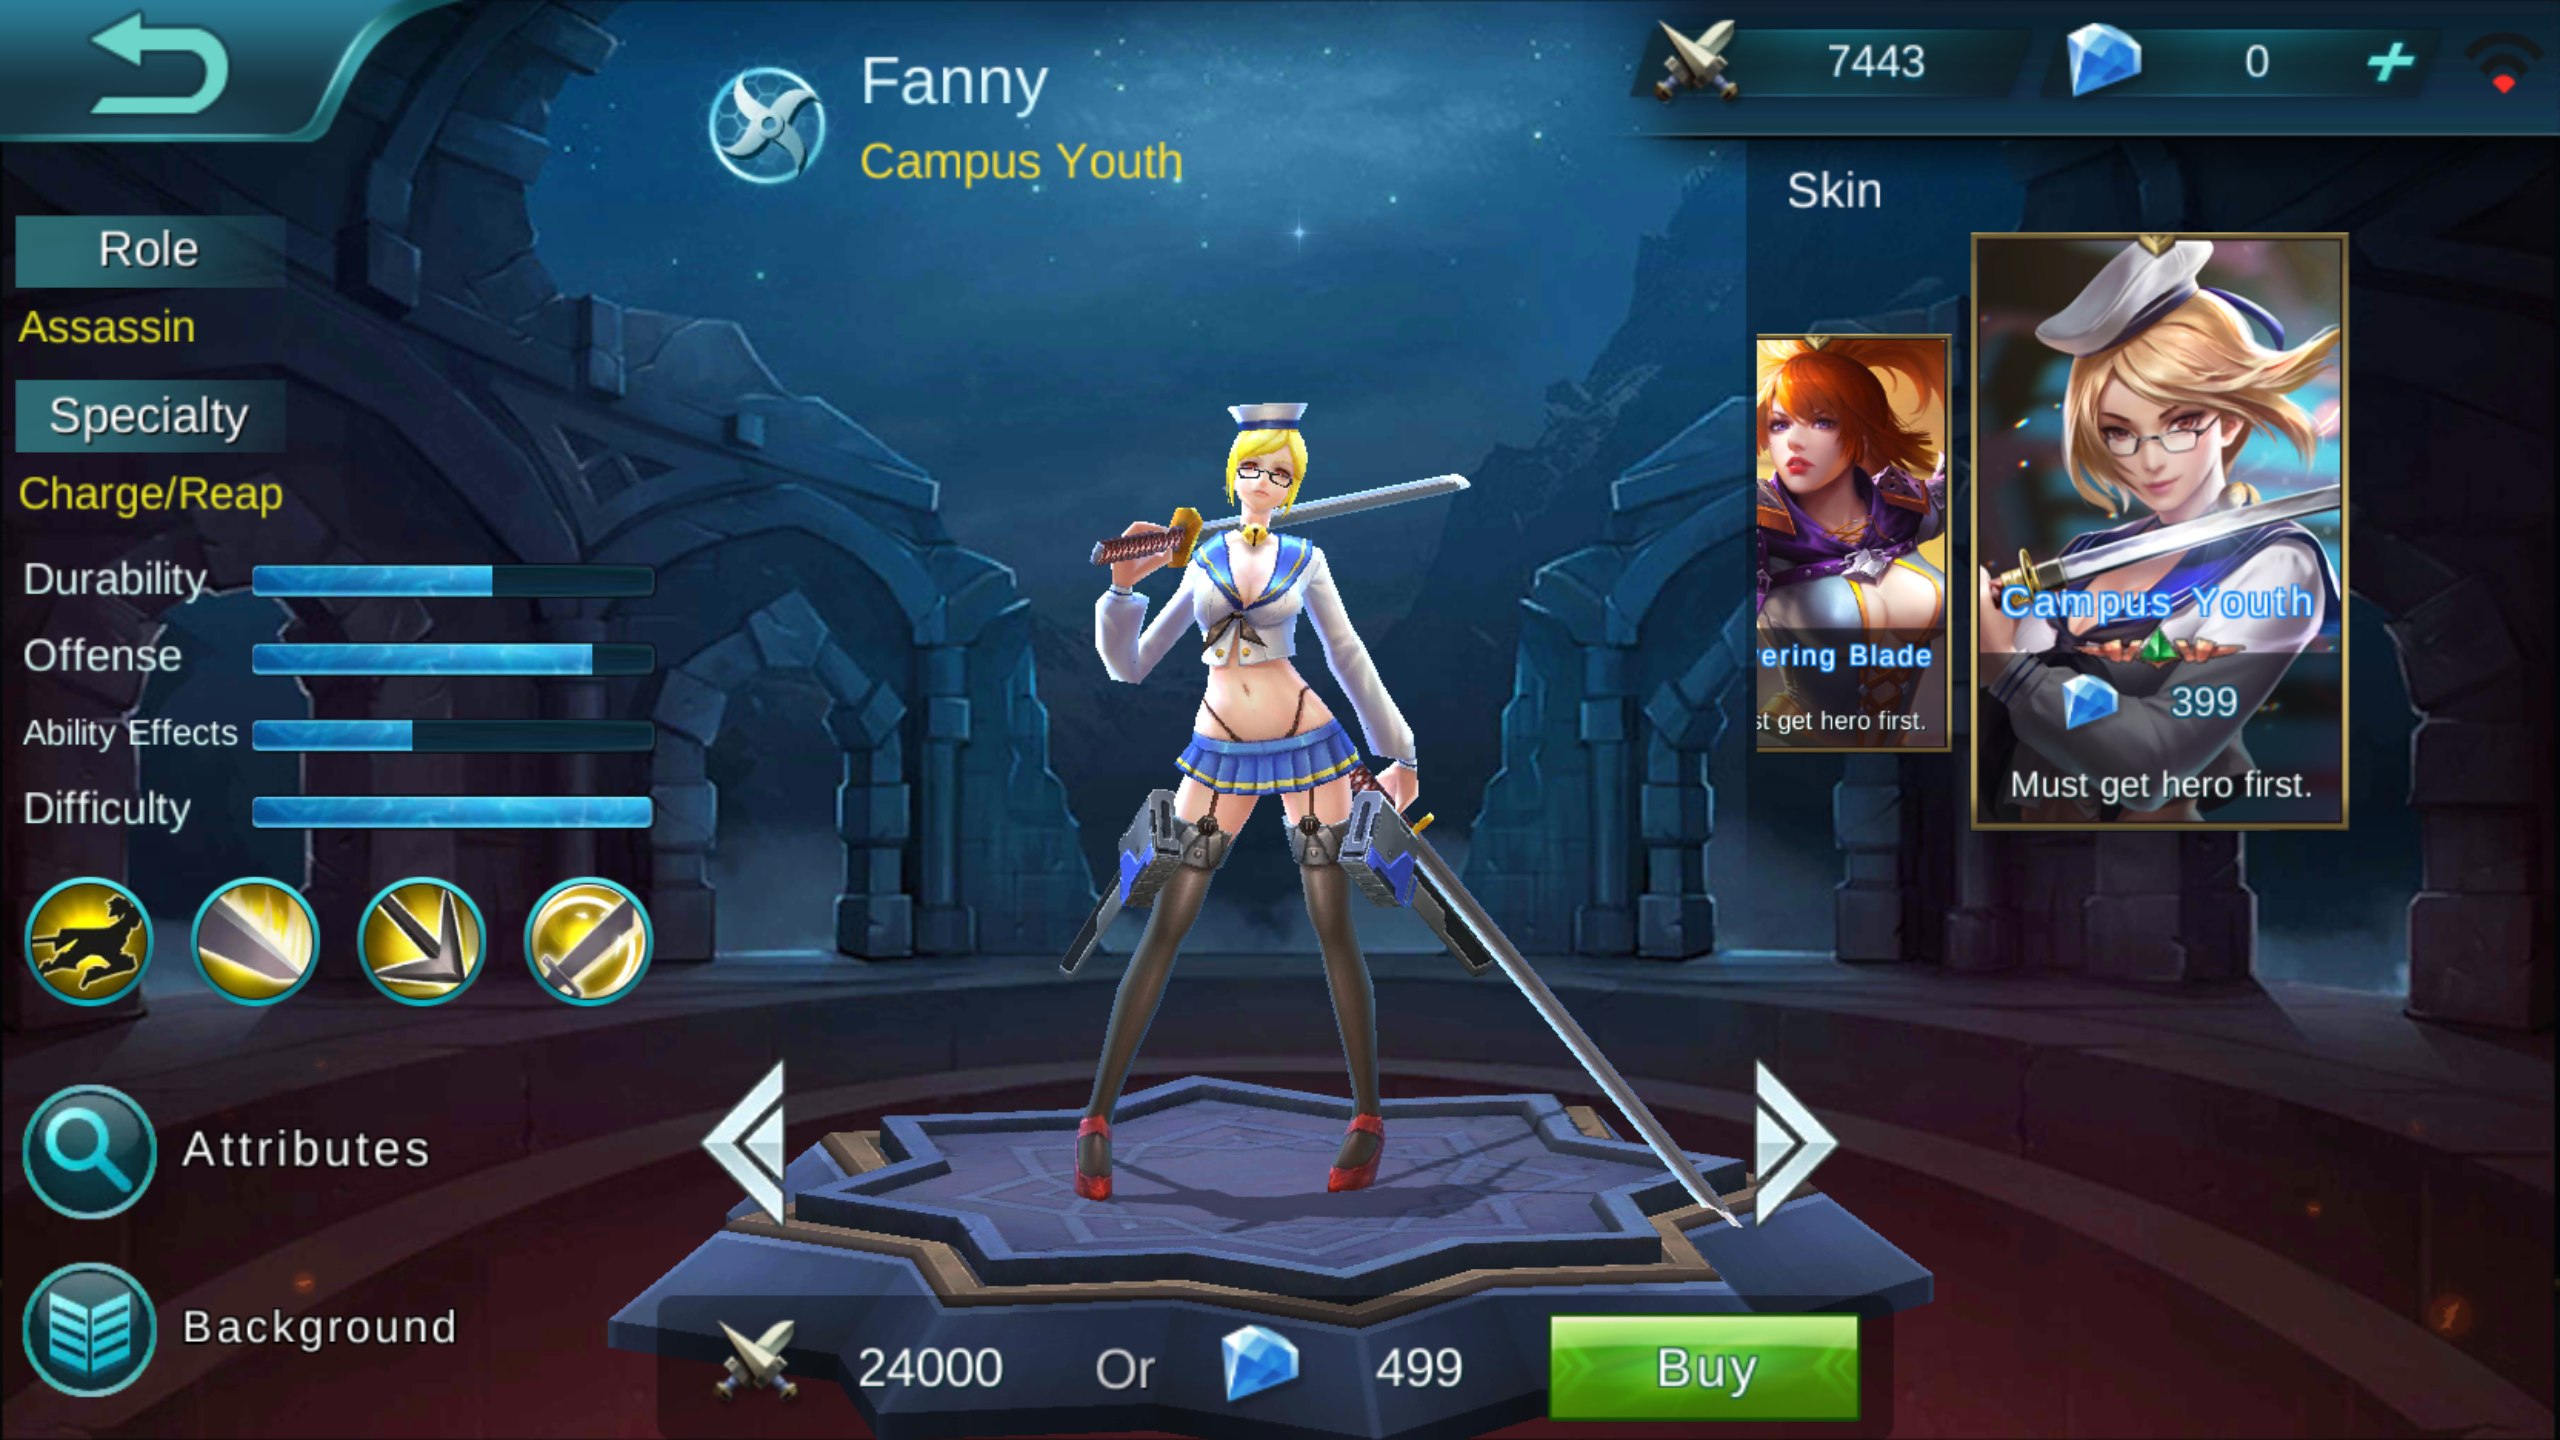 Fanny Hovering Blade Review Mobile Legends Bang Bang Online